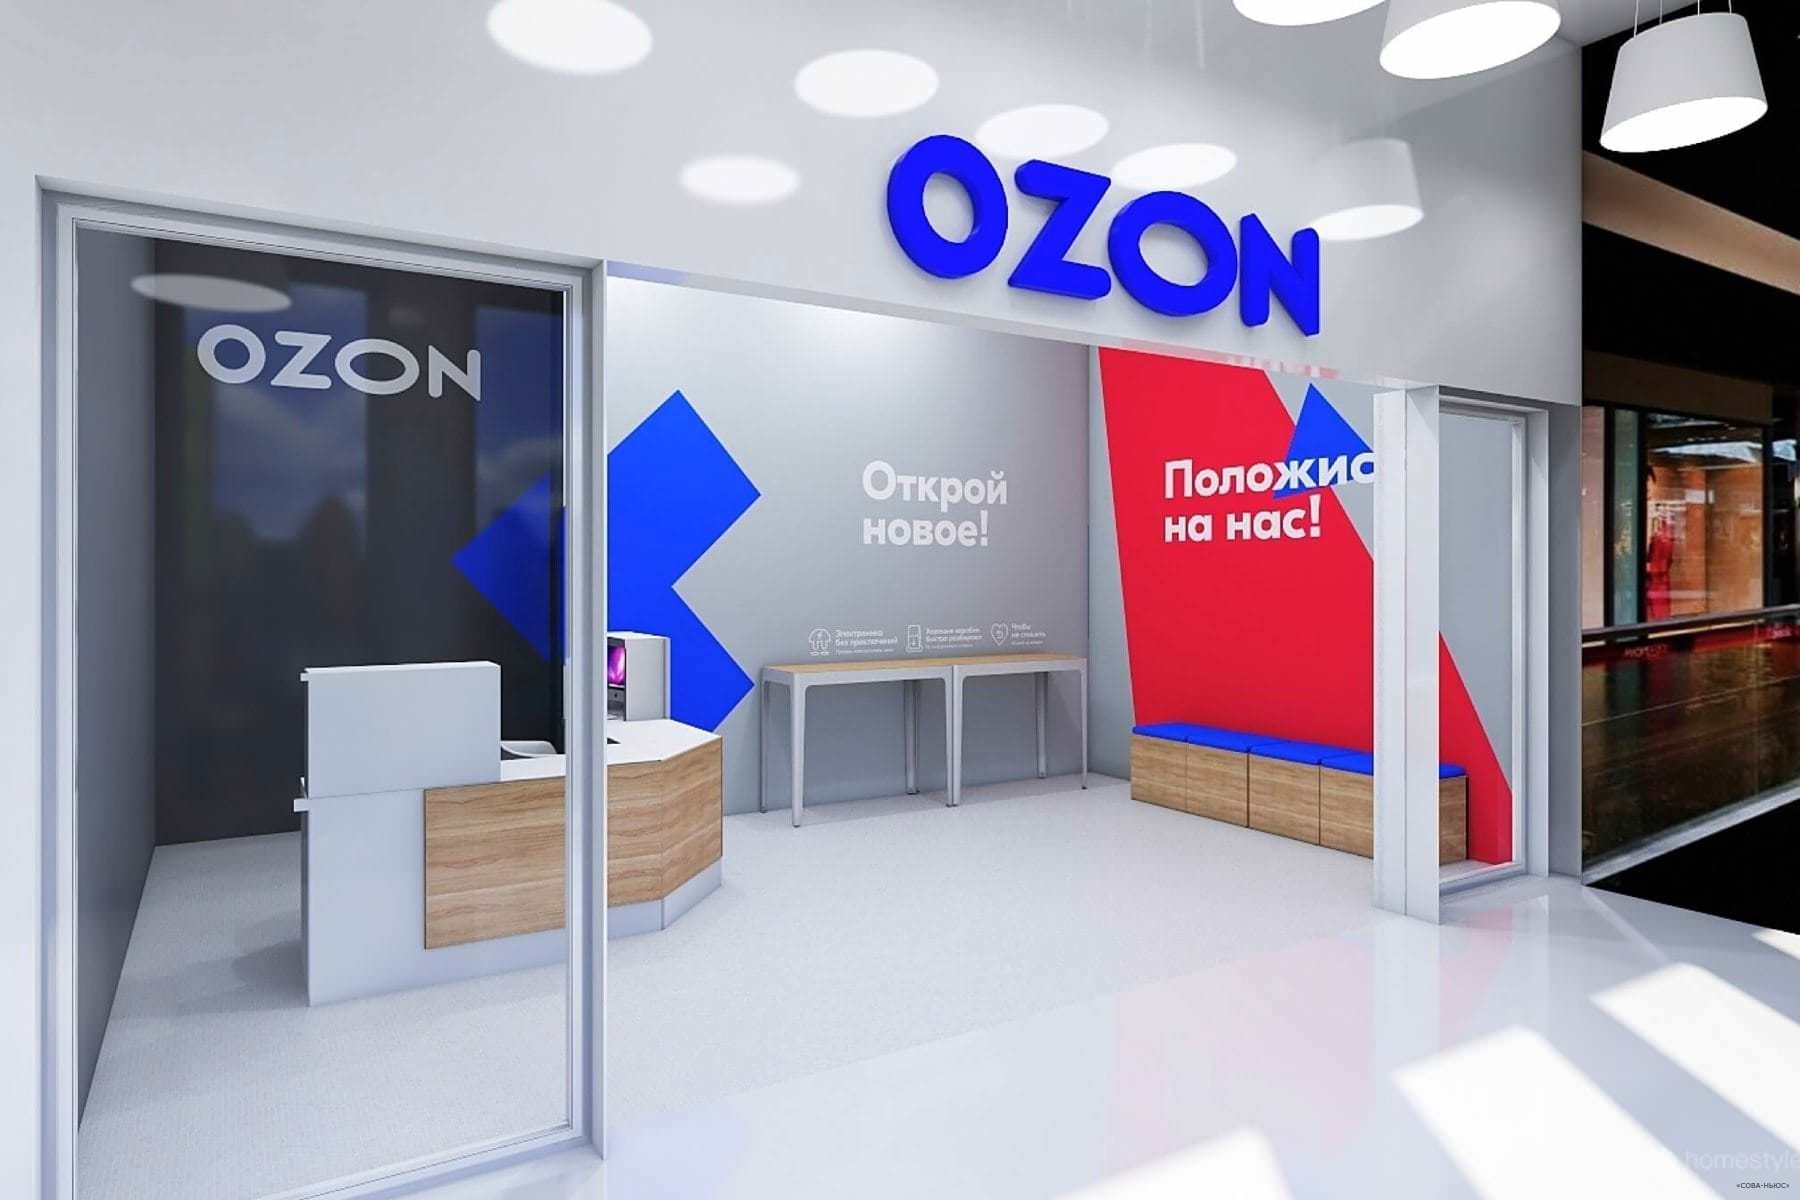 Ozon вложит 8 млрд рублей в строительство логистического комплекса в Саратове